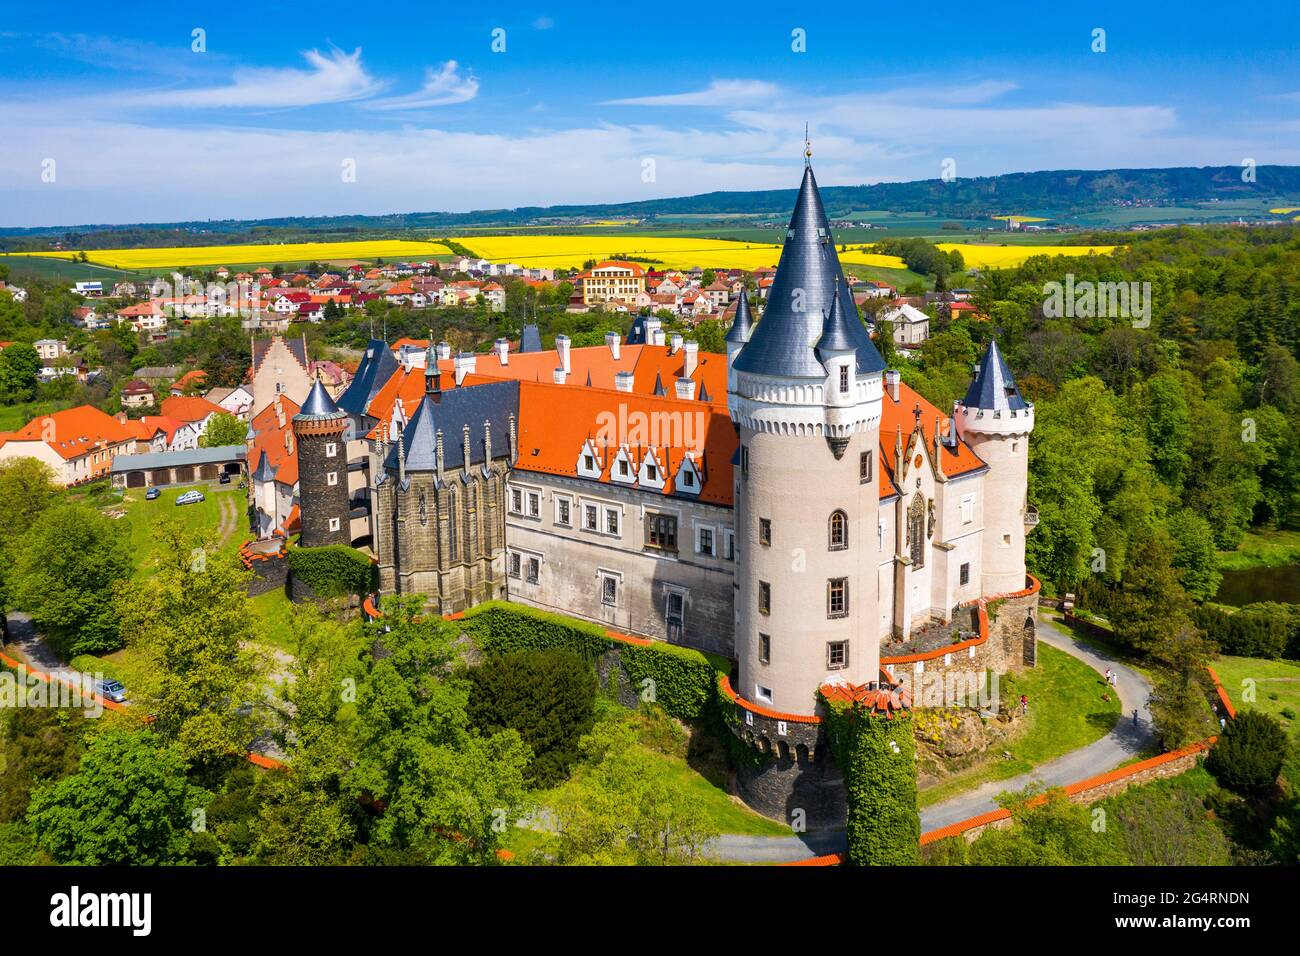 Luftaufnahme des Schlosses Zleby in der Region Mittelböhmen, Tschechische Republik. Die ursprüngliche Burg Zleby wurde im neugotischen Stil des Schlosses umgebaut. Chatten Stockfoto